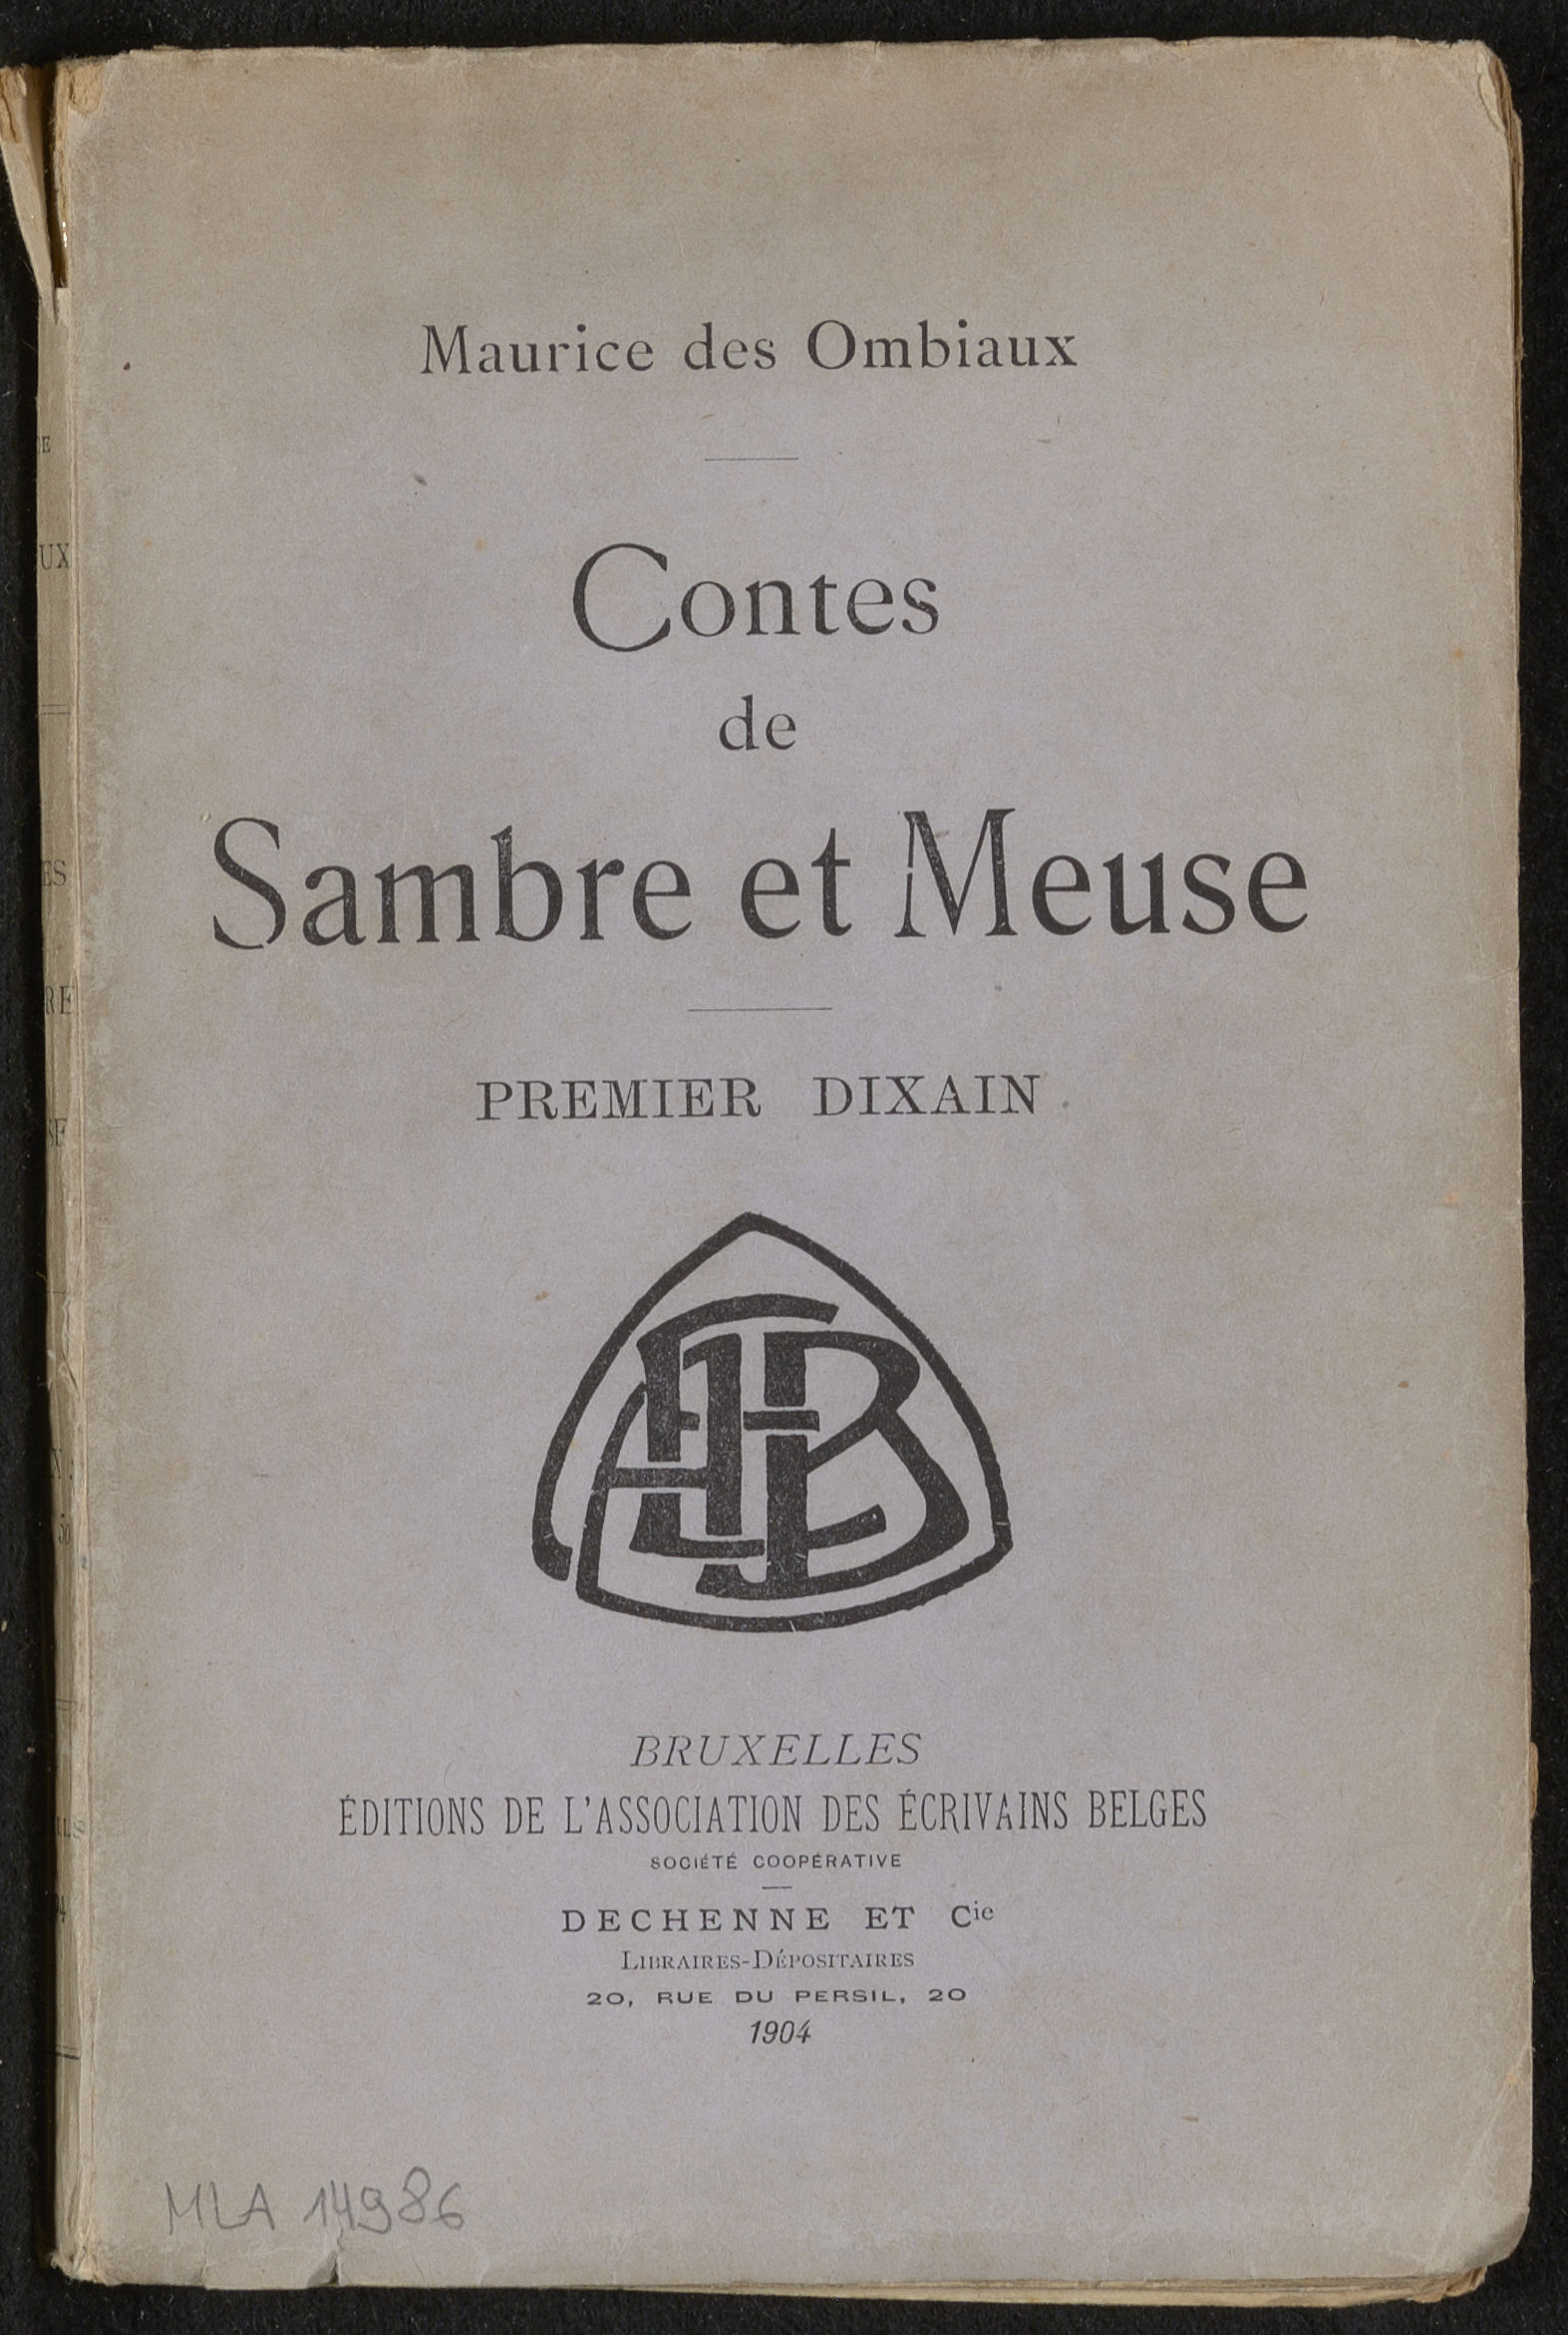 Contes de Sambre et Meuse